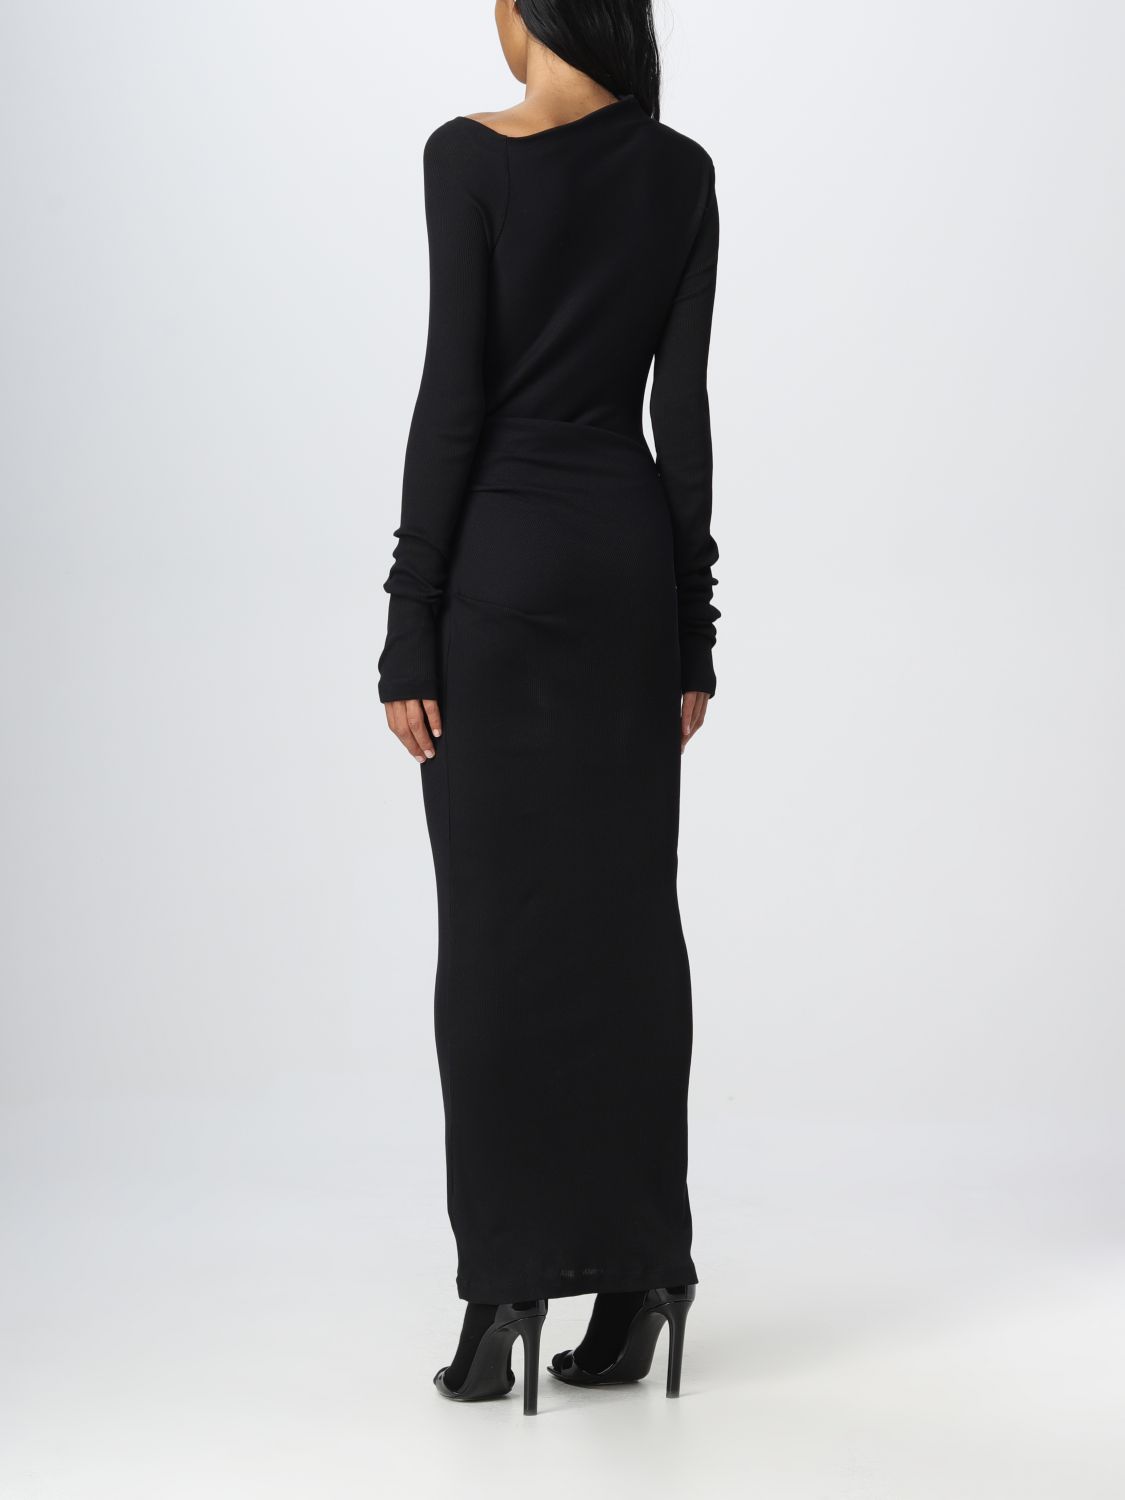 Robes Helmut Lang: Robes Helmut Lang femme noir 2